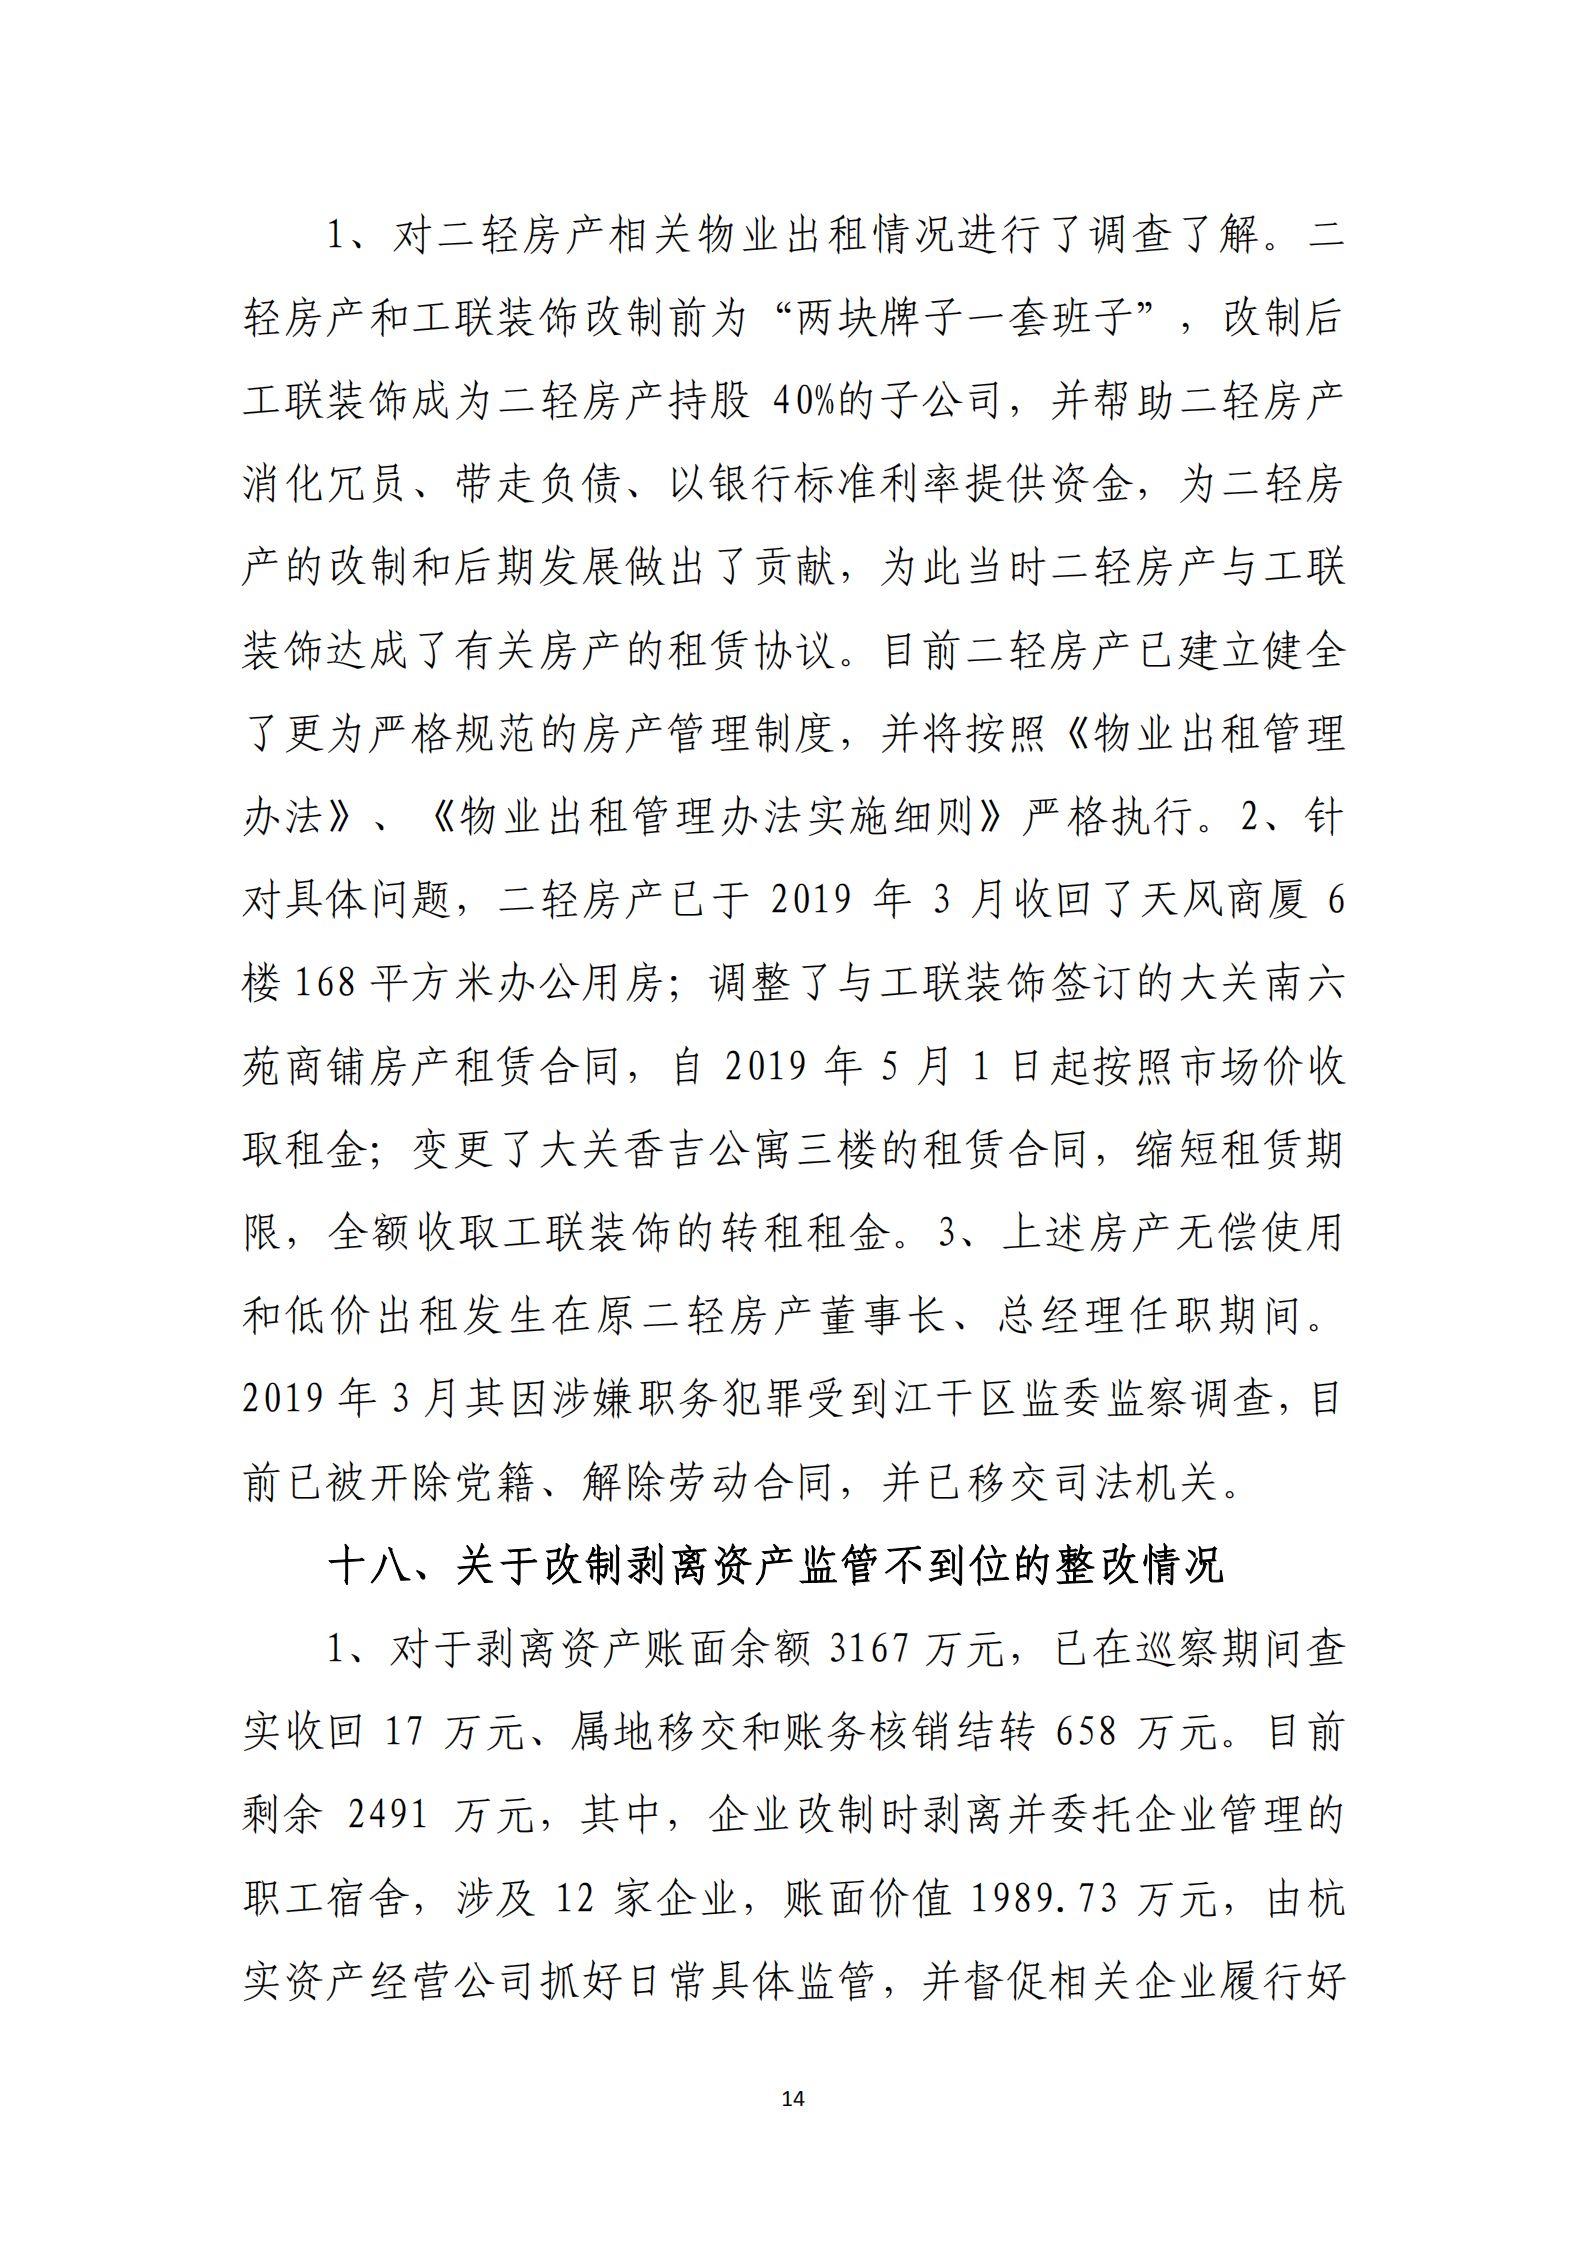 大阳城集团娱乐游戏党委关于巡察整改情况的通报_13.png